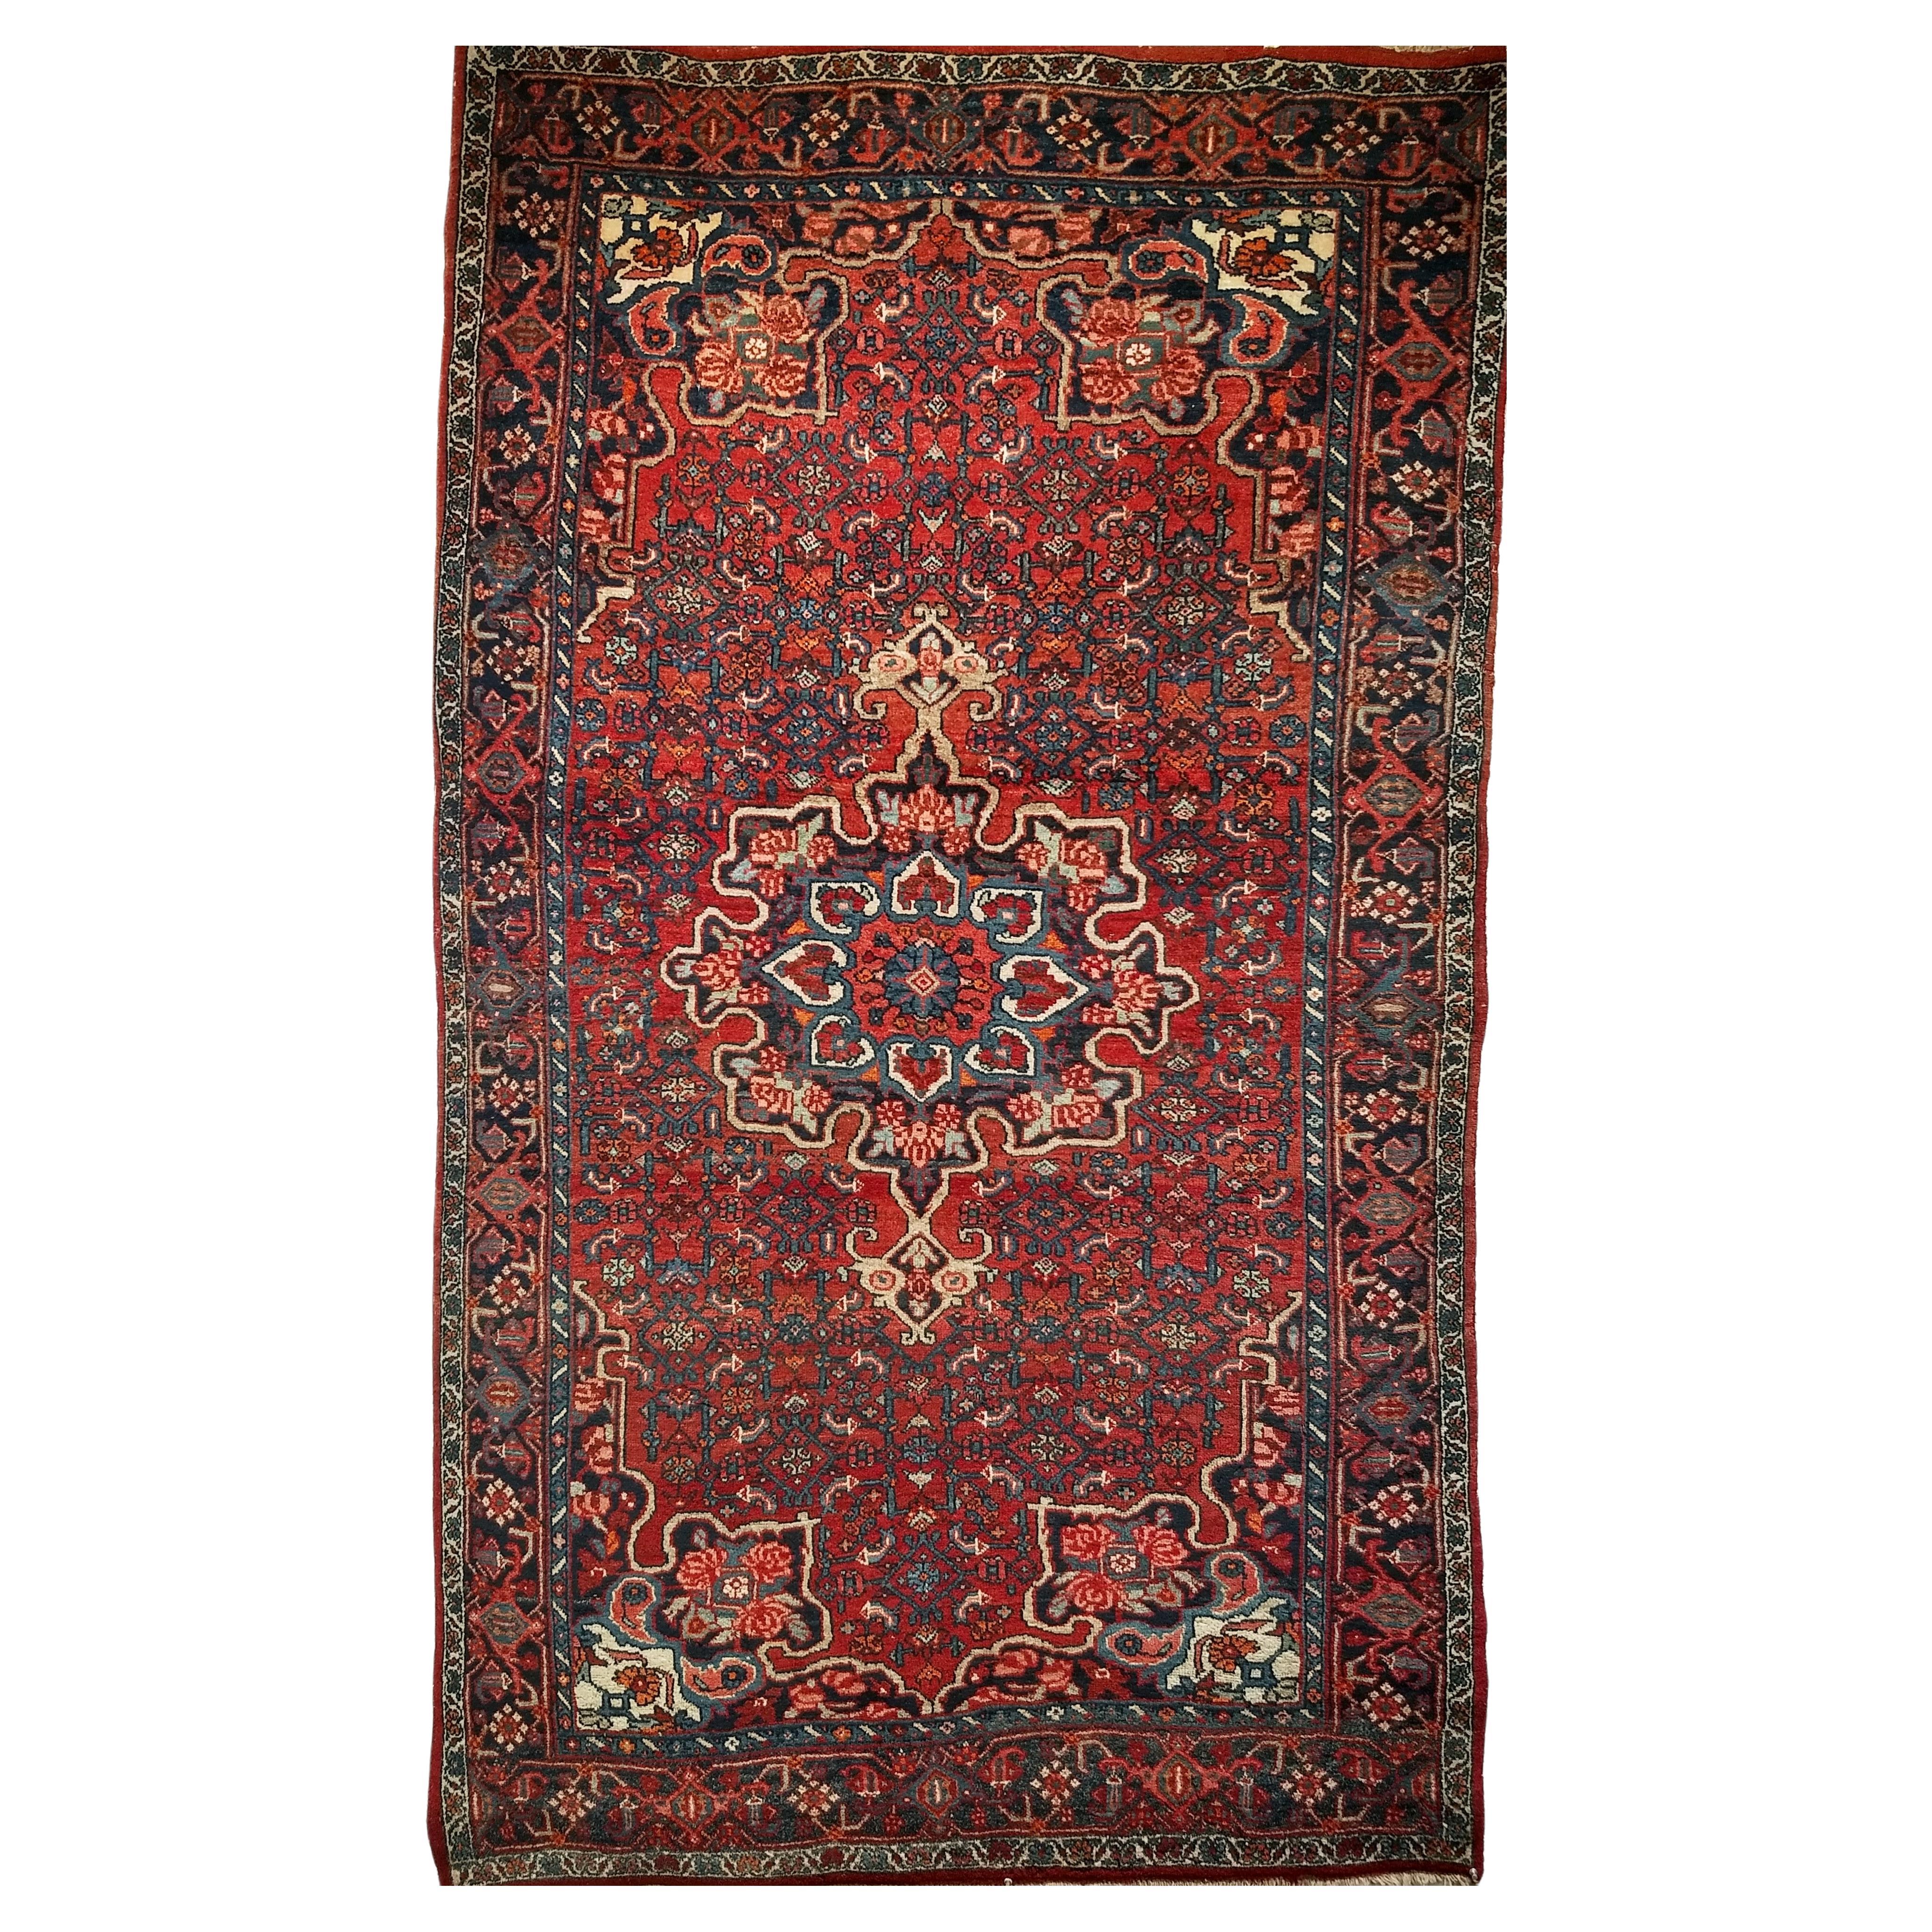 Persischer Bidjar-Teppich im Vintage-Stil mit Blumenmuster in Rot, Blau, Rosa, Elfenbein und Elfenbein